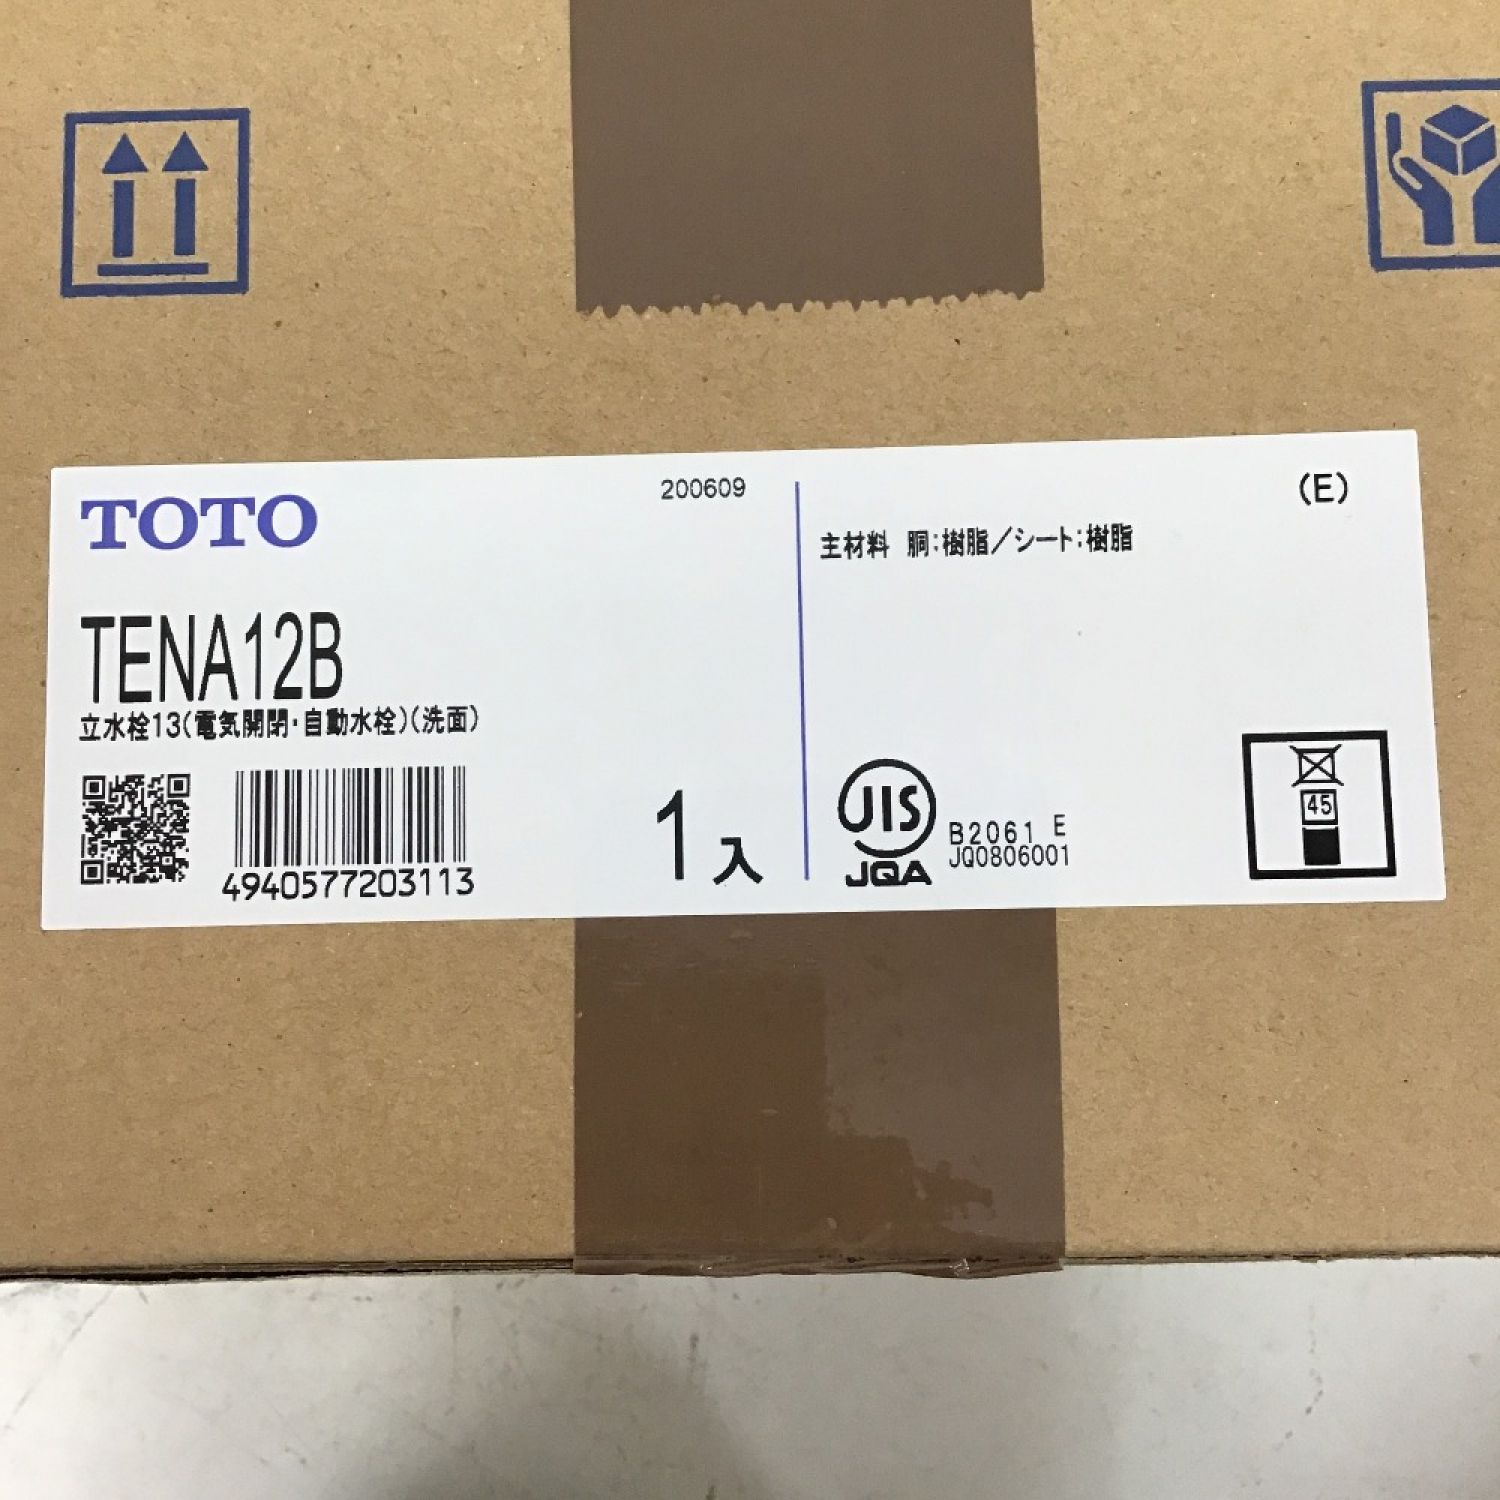 初回限定】 【新品】 TOTO TENA12B (100V) A 中古】◇◇ 自動水栓